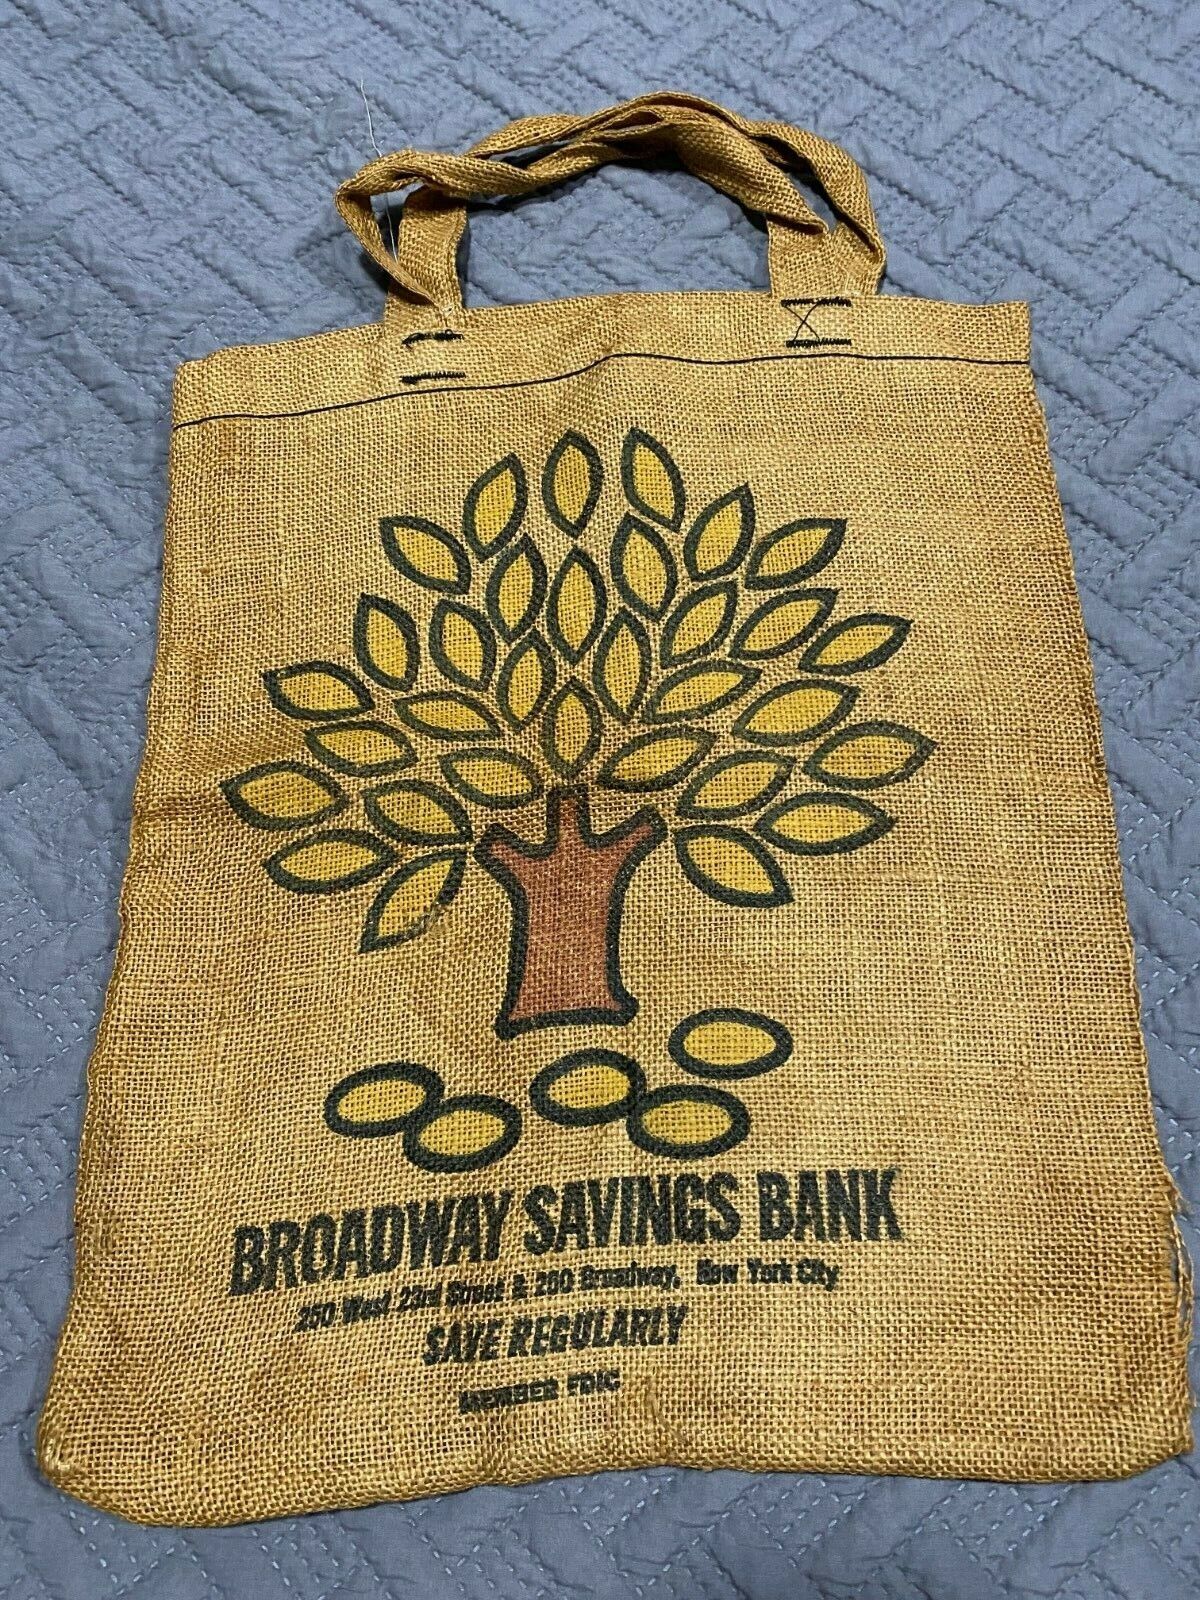 Broadway Savings Bank New York City Promotional Advertising Burlap Shopping Bag